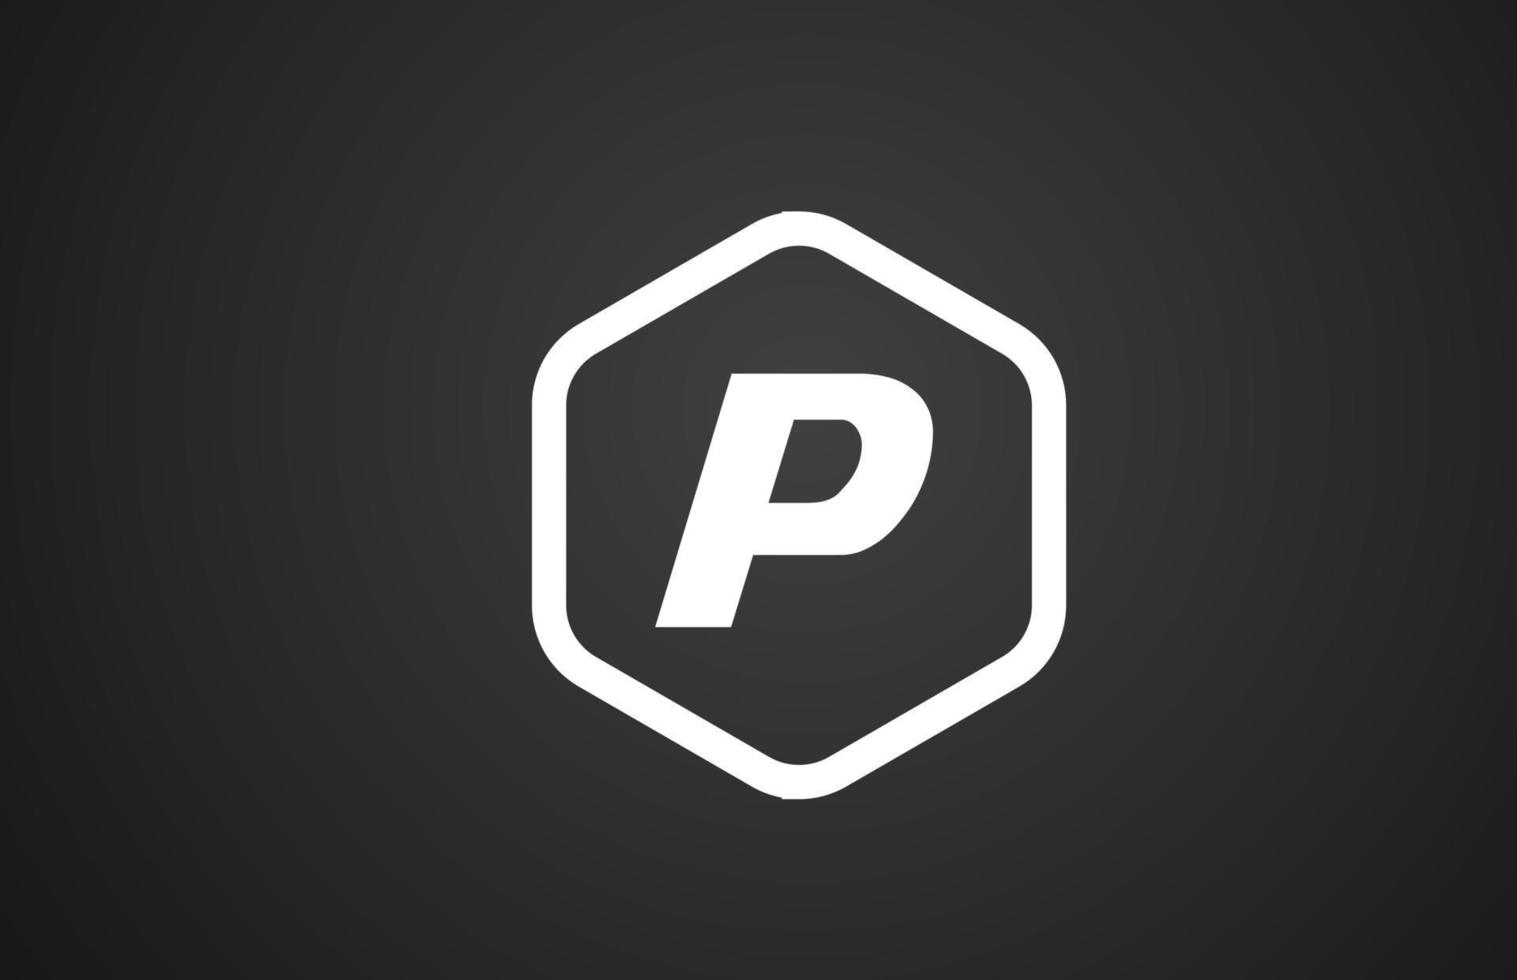 p zwart-wit alfabet letter logo pictogram ontwerp met ruit voor zaken en bedrijf vector